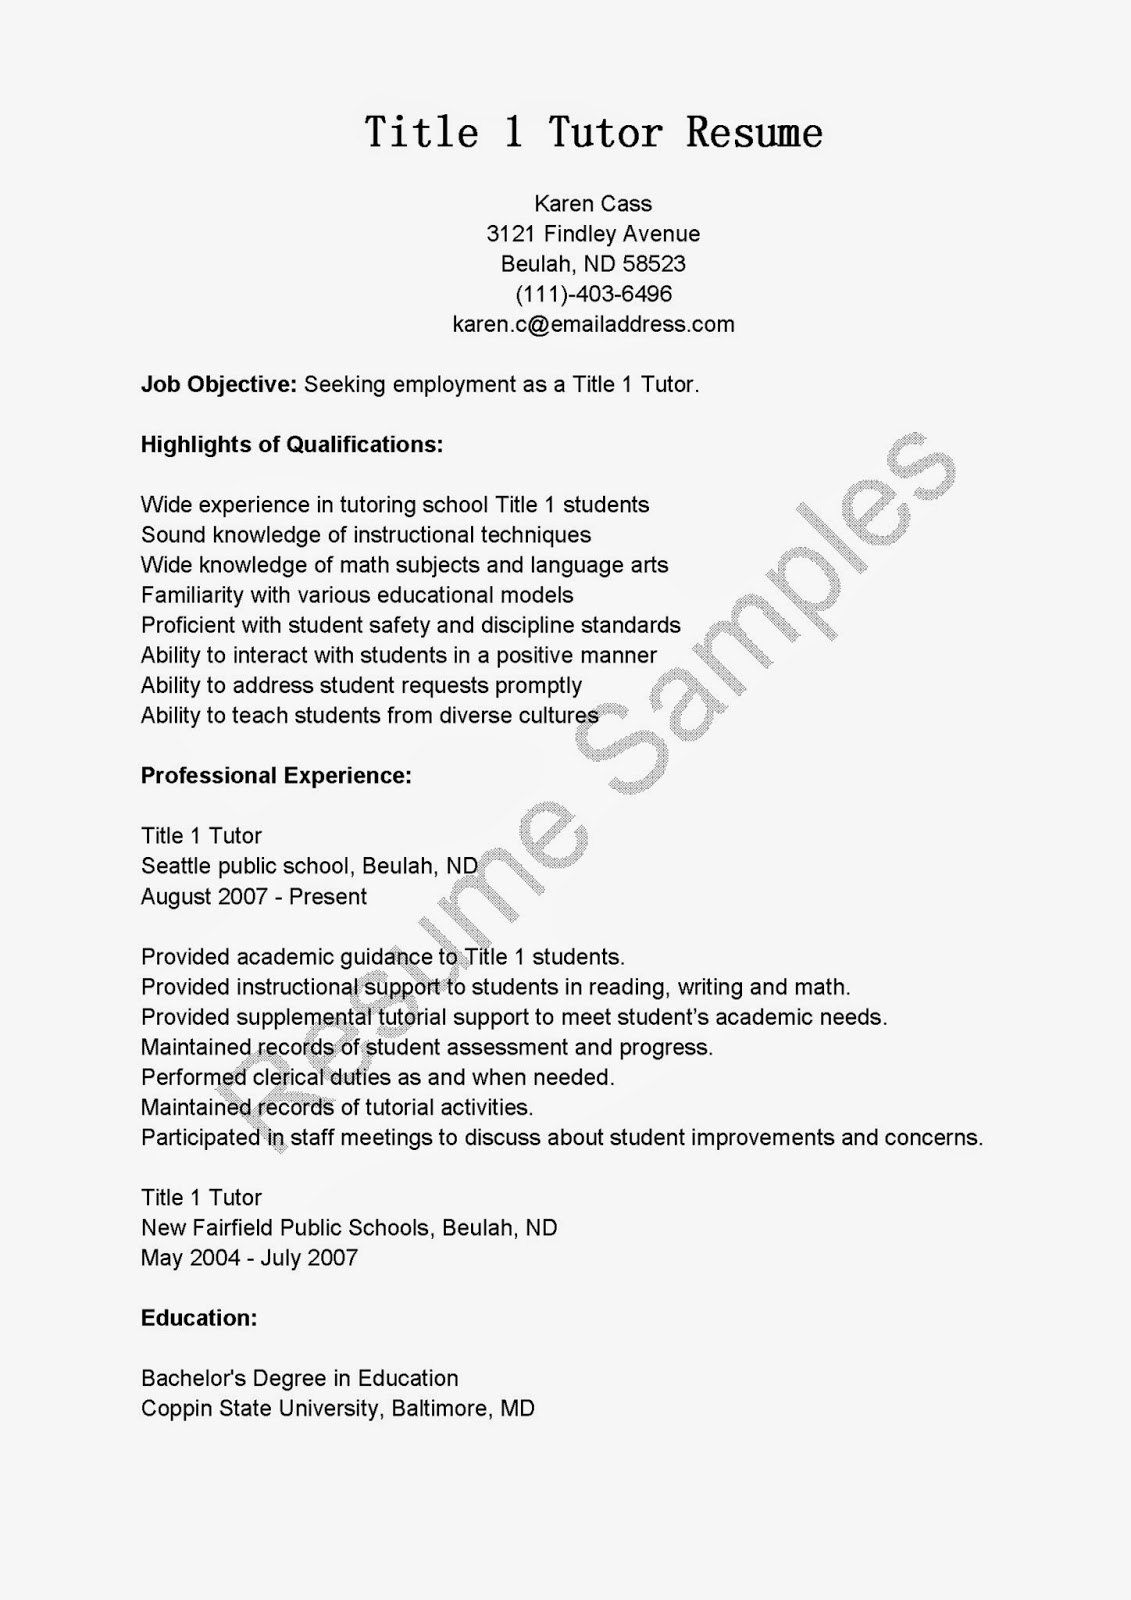 17523 summary on a resume exles 2